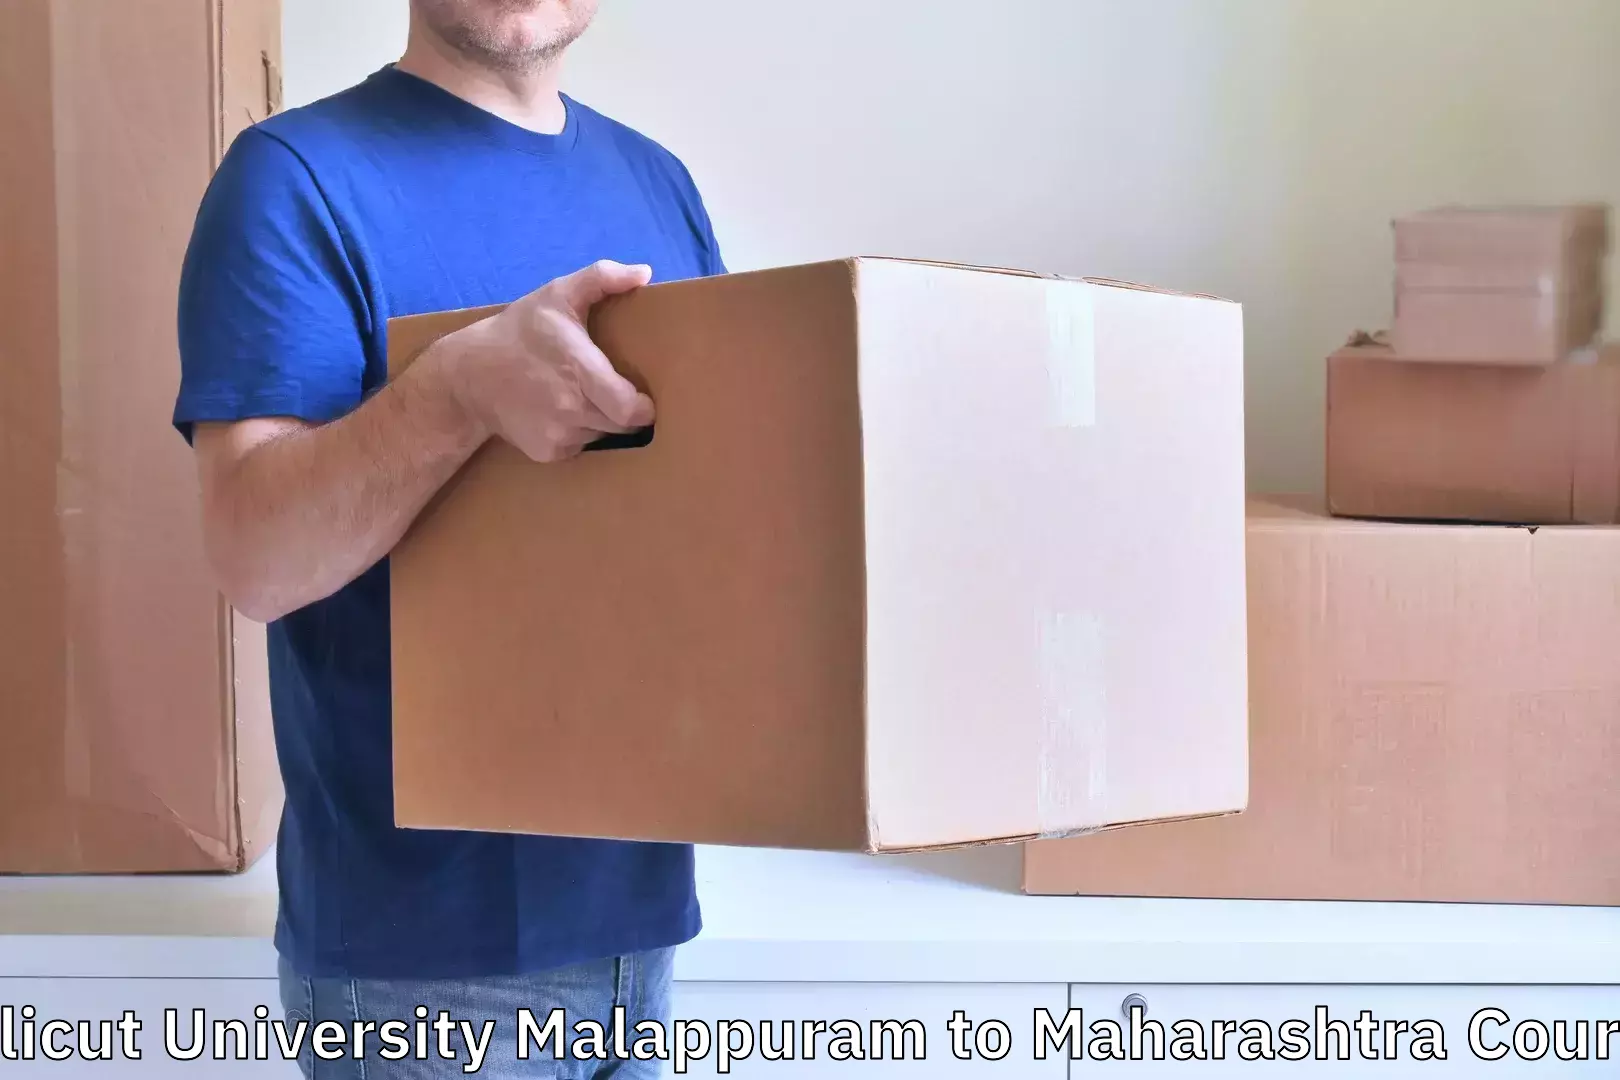 Luggage transport consulting Calicut University Malappuram to Maharashtra